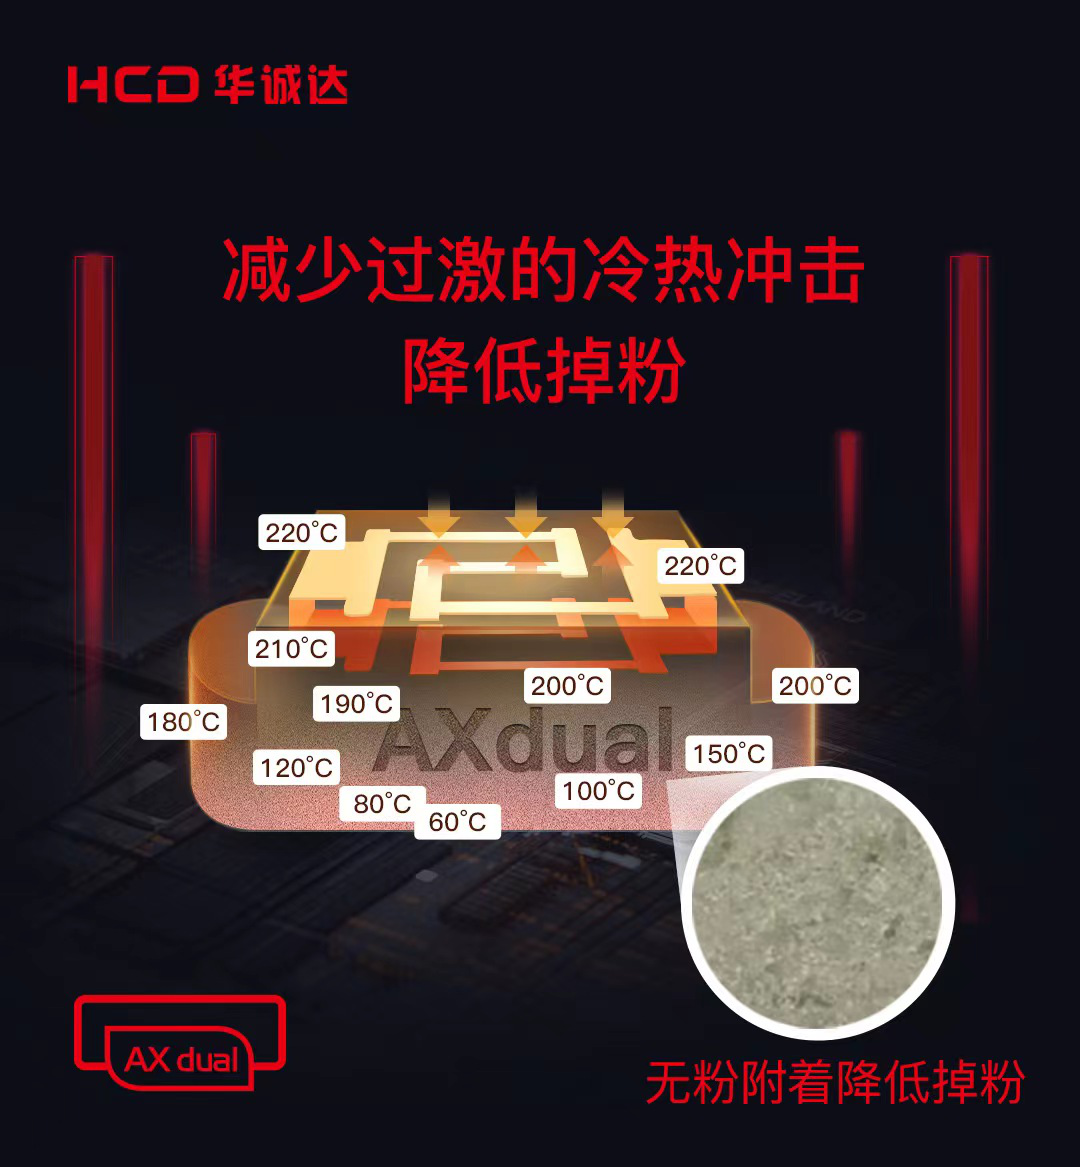 华诚达重磅发布双网分级发热陶瓷芯AXdual，再次革新雾化芯技术！